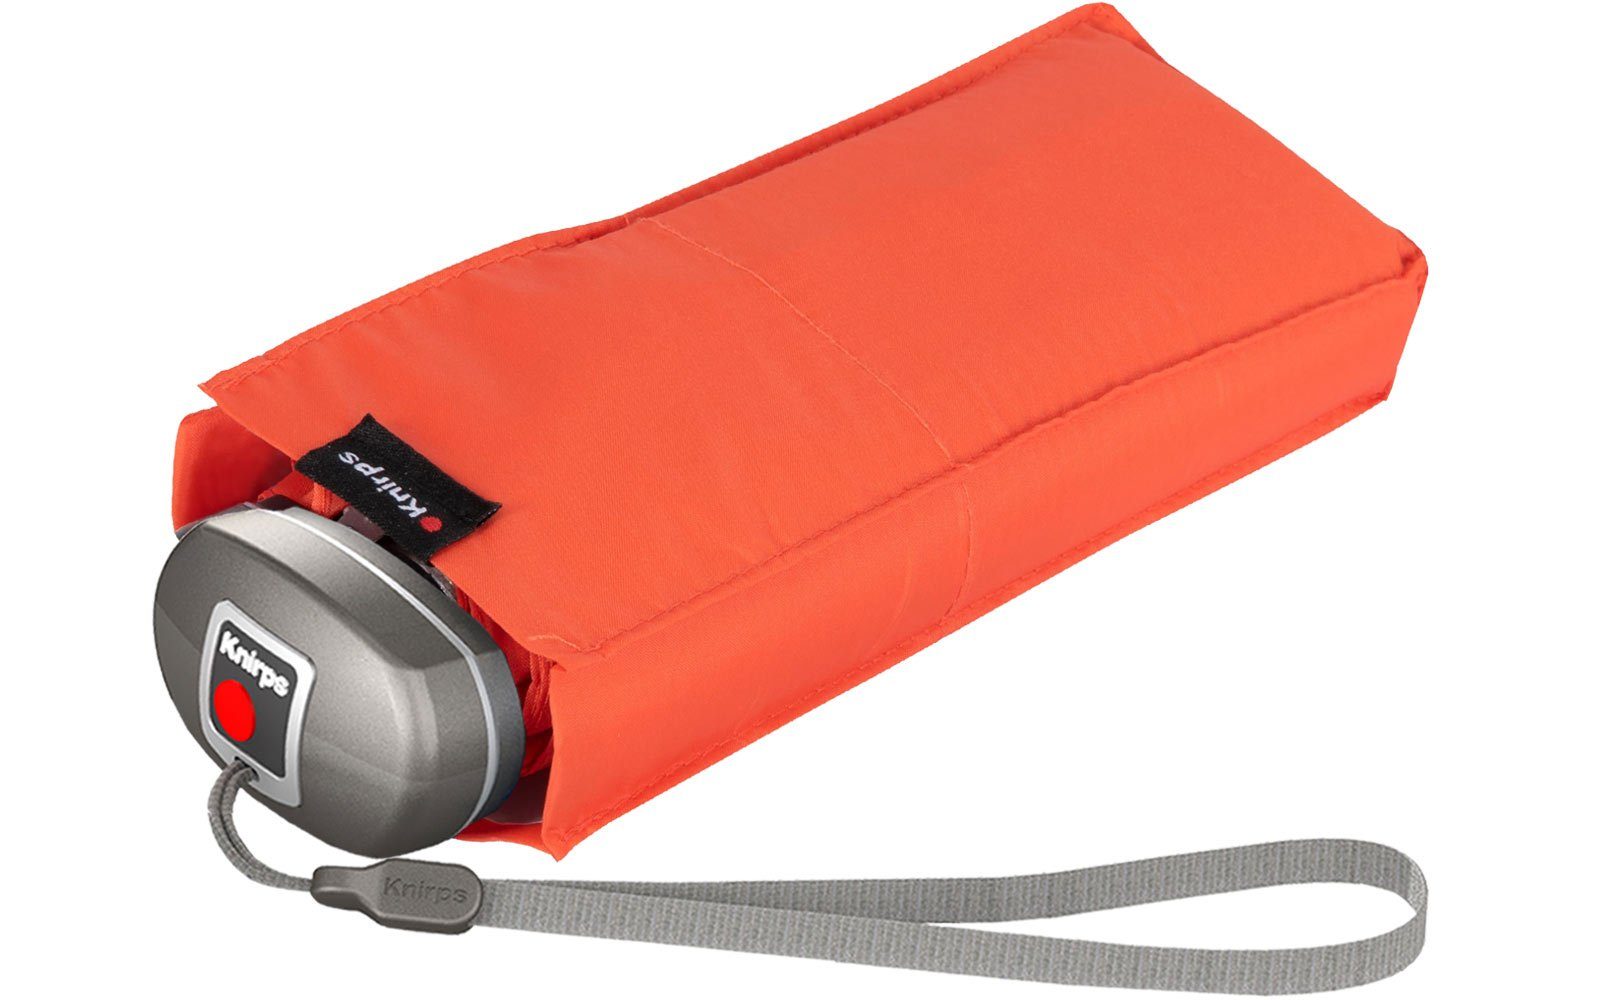 Knirps® Taschenregenschirm Mini-Schirm Travel klein Begleiter, der der jede in leicht passt Tasche kompakt, zuverlässige